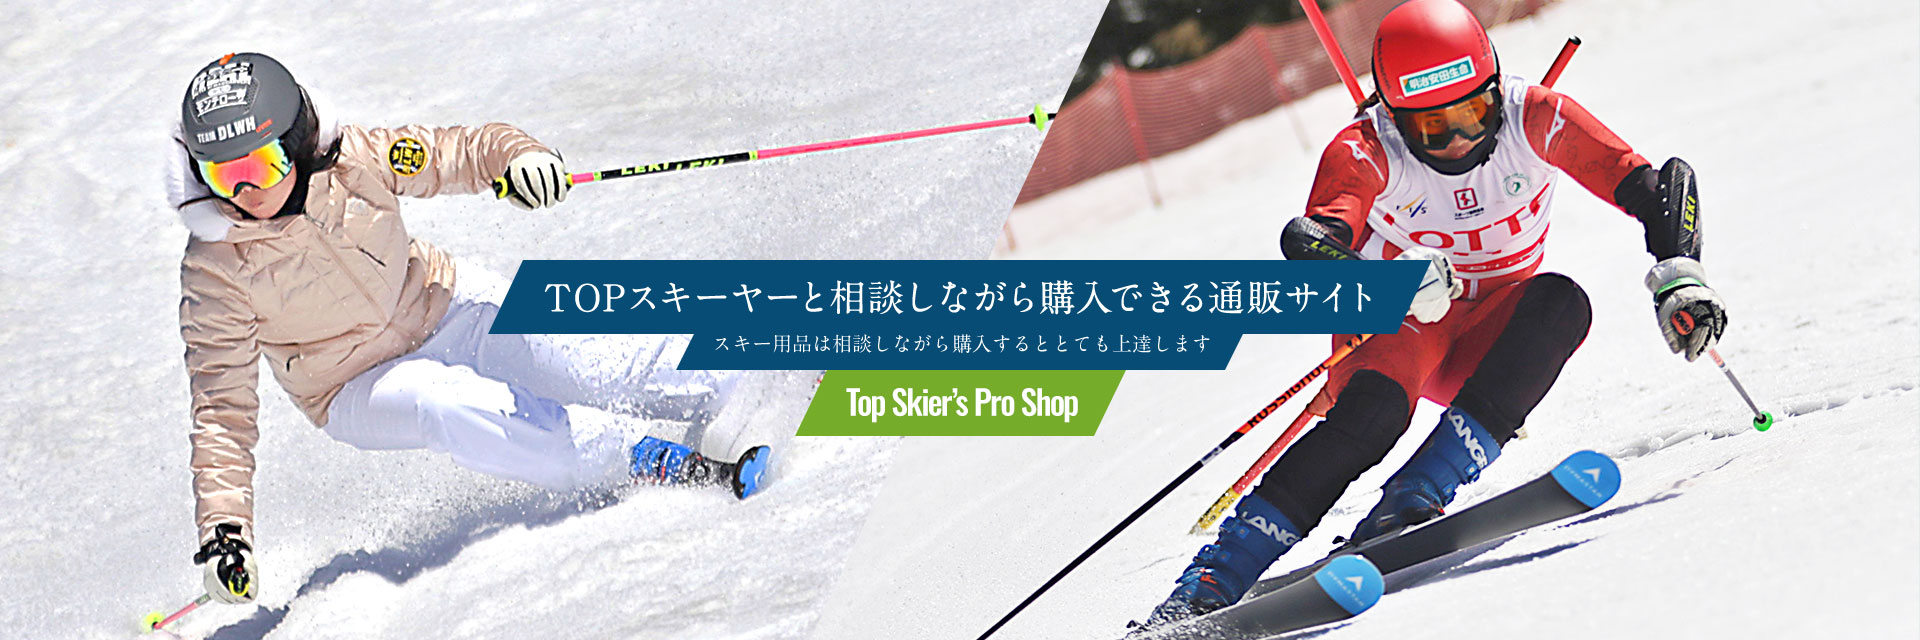 TOPスキーヤーと相談しながら購入できる通販サイト スキー用品は相談しながら購入するととても上達します